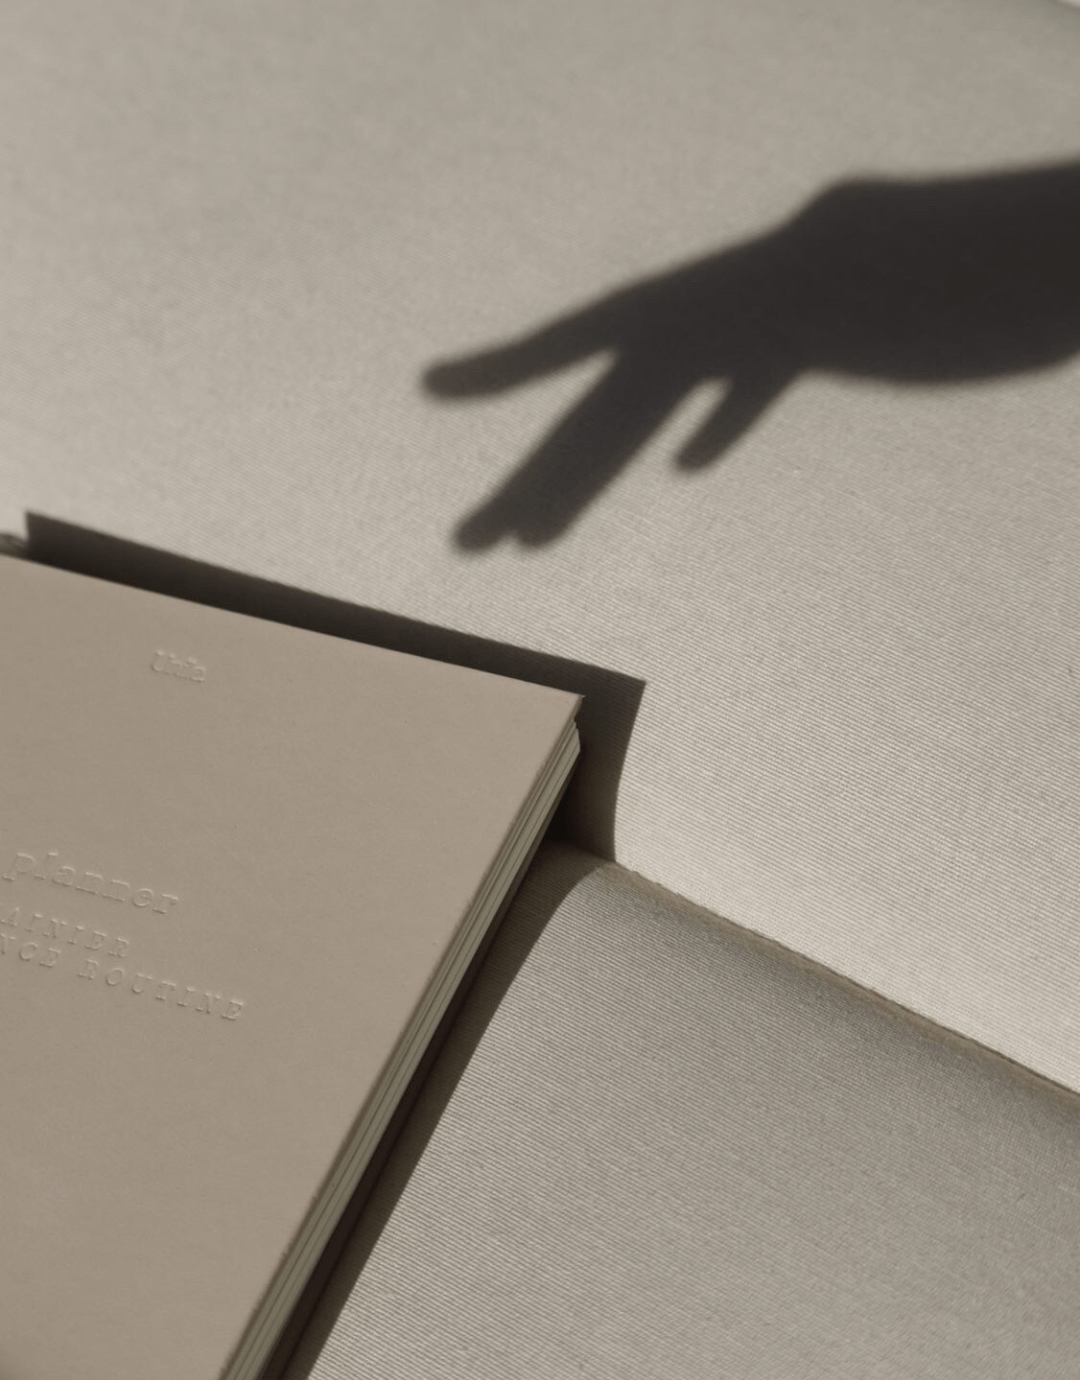 LE planner -version embossed - unile.selfcare planner beige avec lettres gravées avec ombre de main féminine en haut à droite